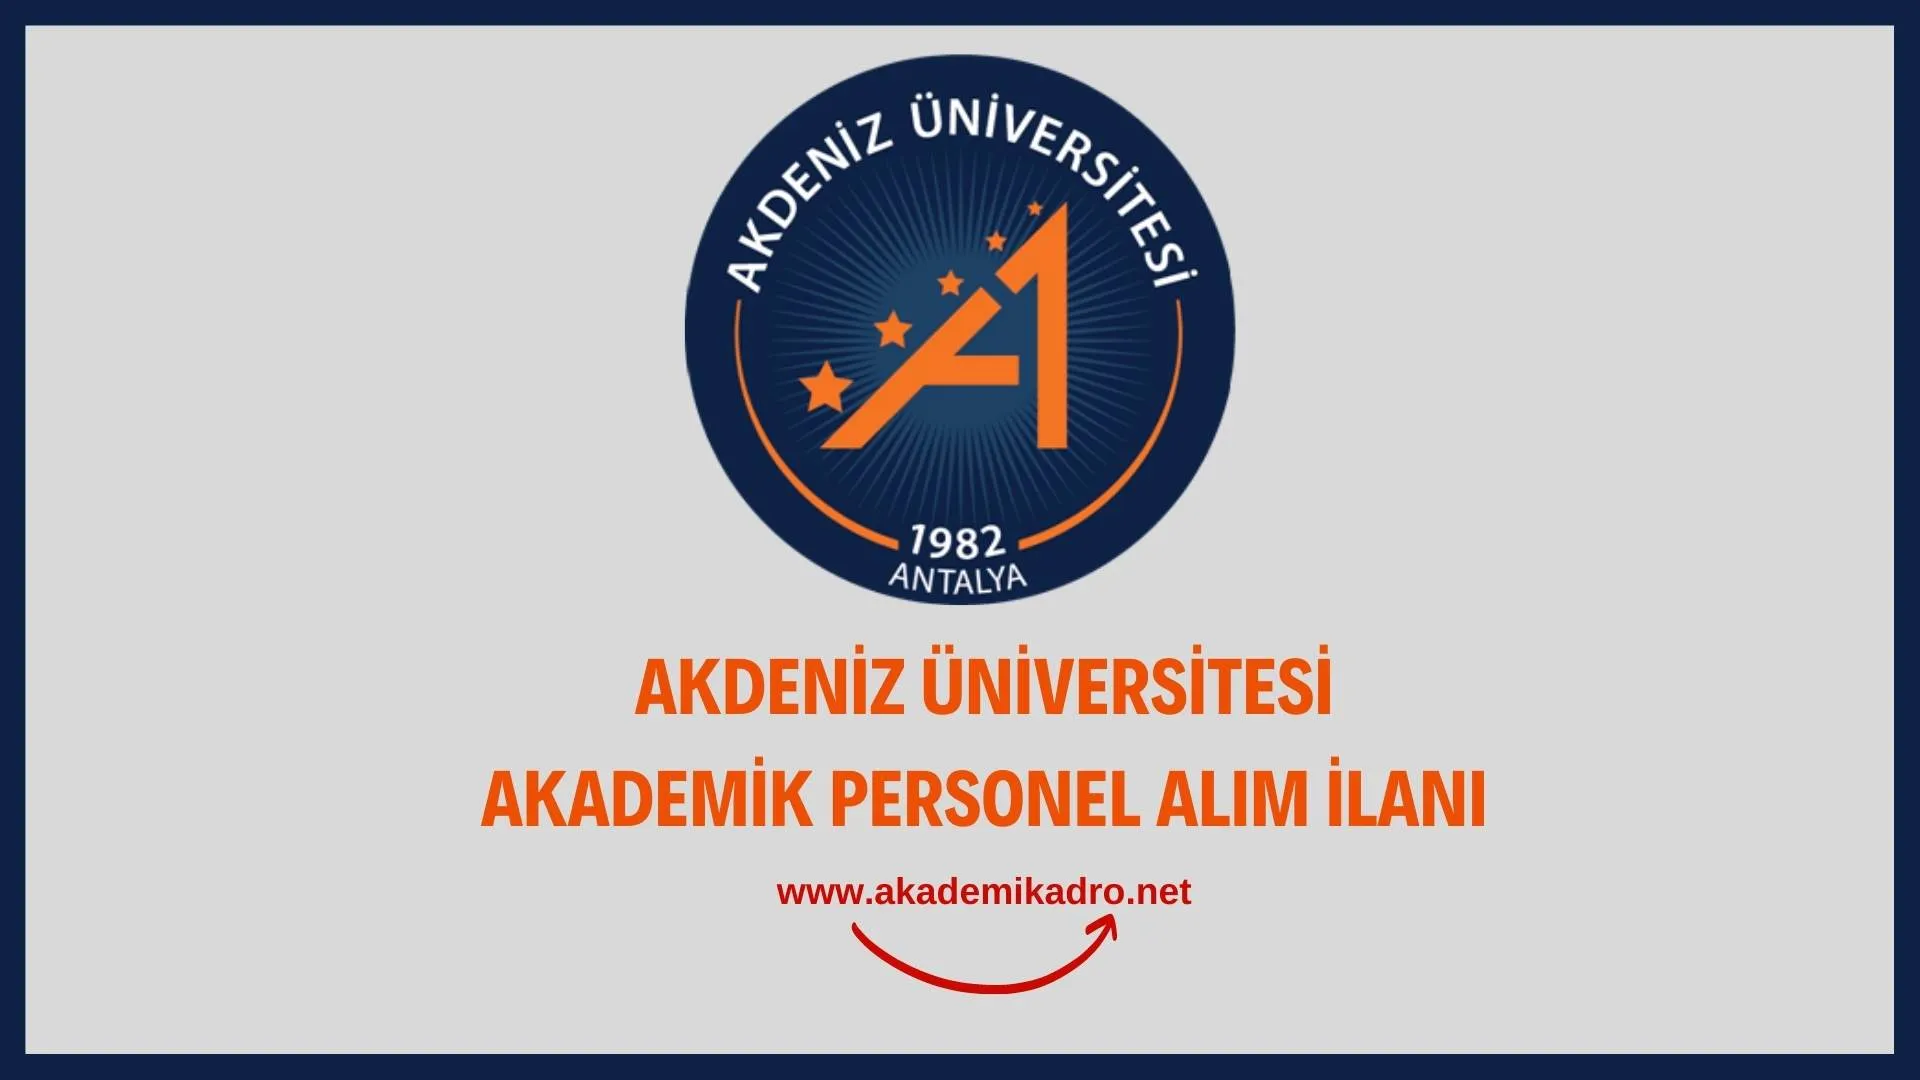 Akdeniz Üniversitesi çeşitli branşlarda 19 akademik personel alacak. Son başvuru tarihi 12 Eylül 2022.